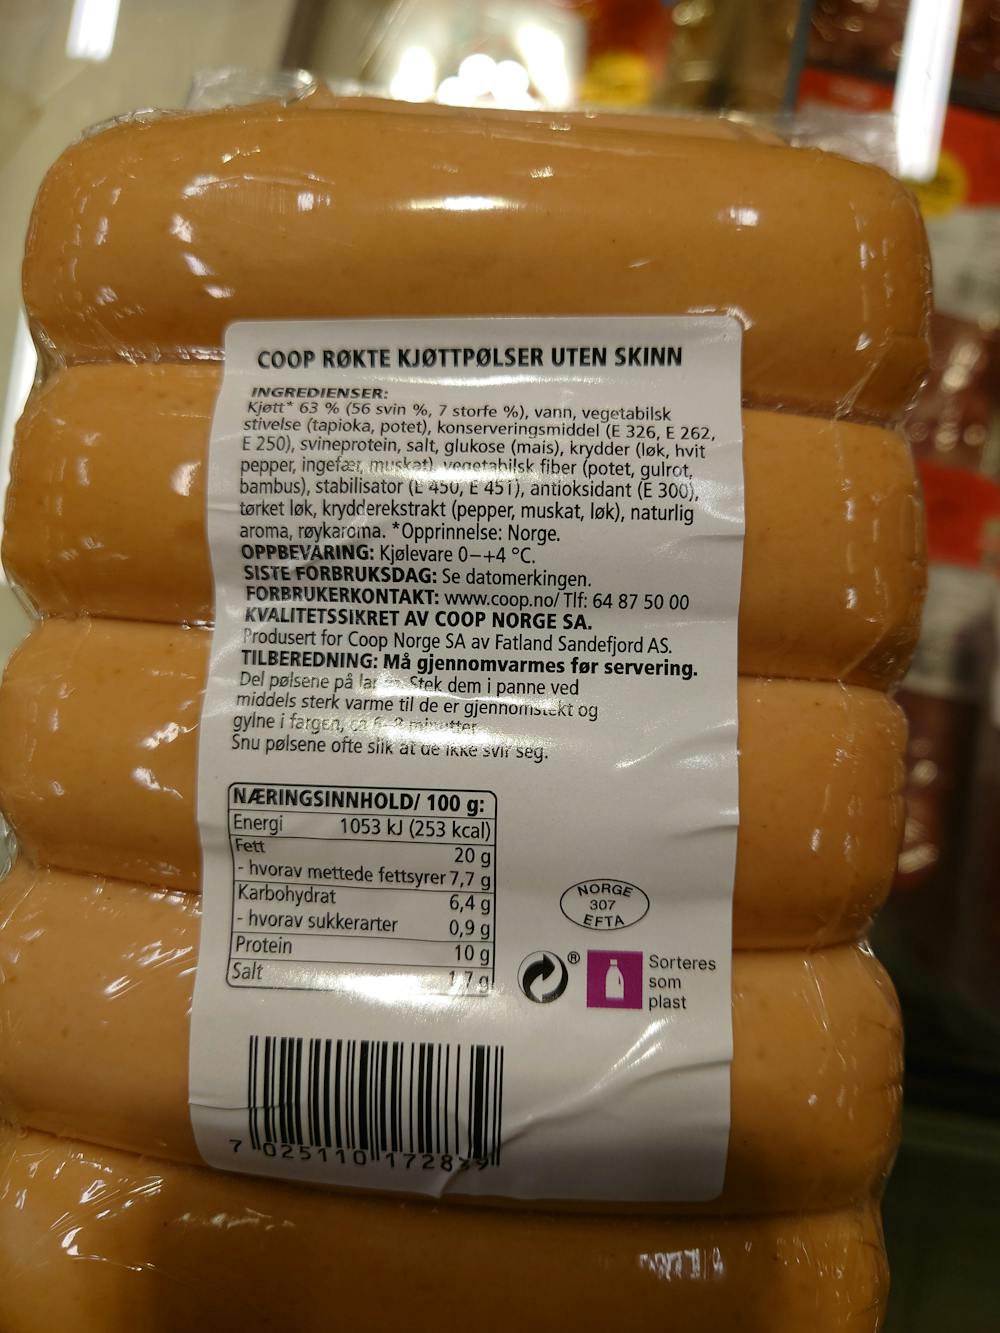 Ingrediensliste - Røkte kjøttpølser uten skinn, Coop